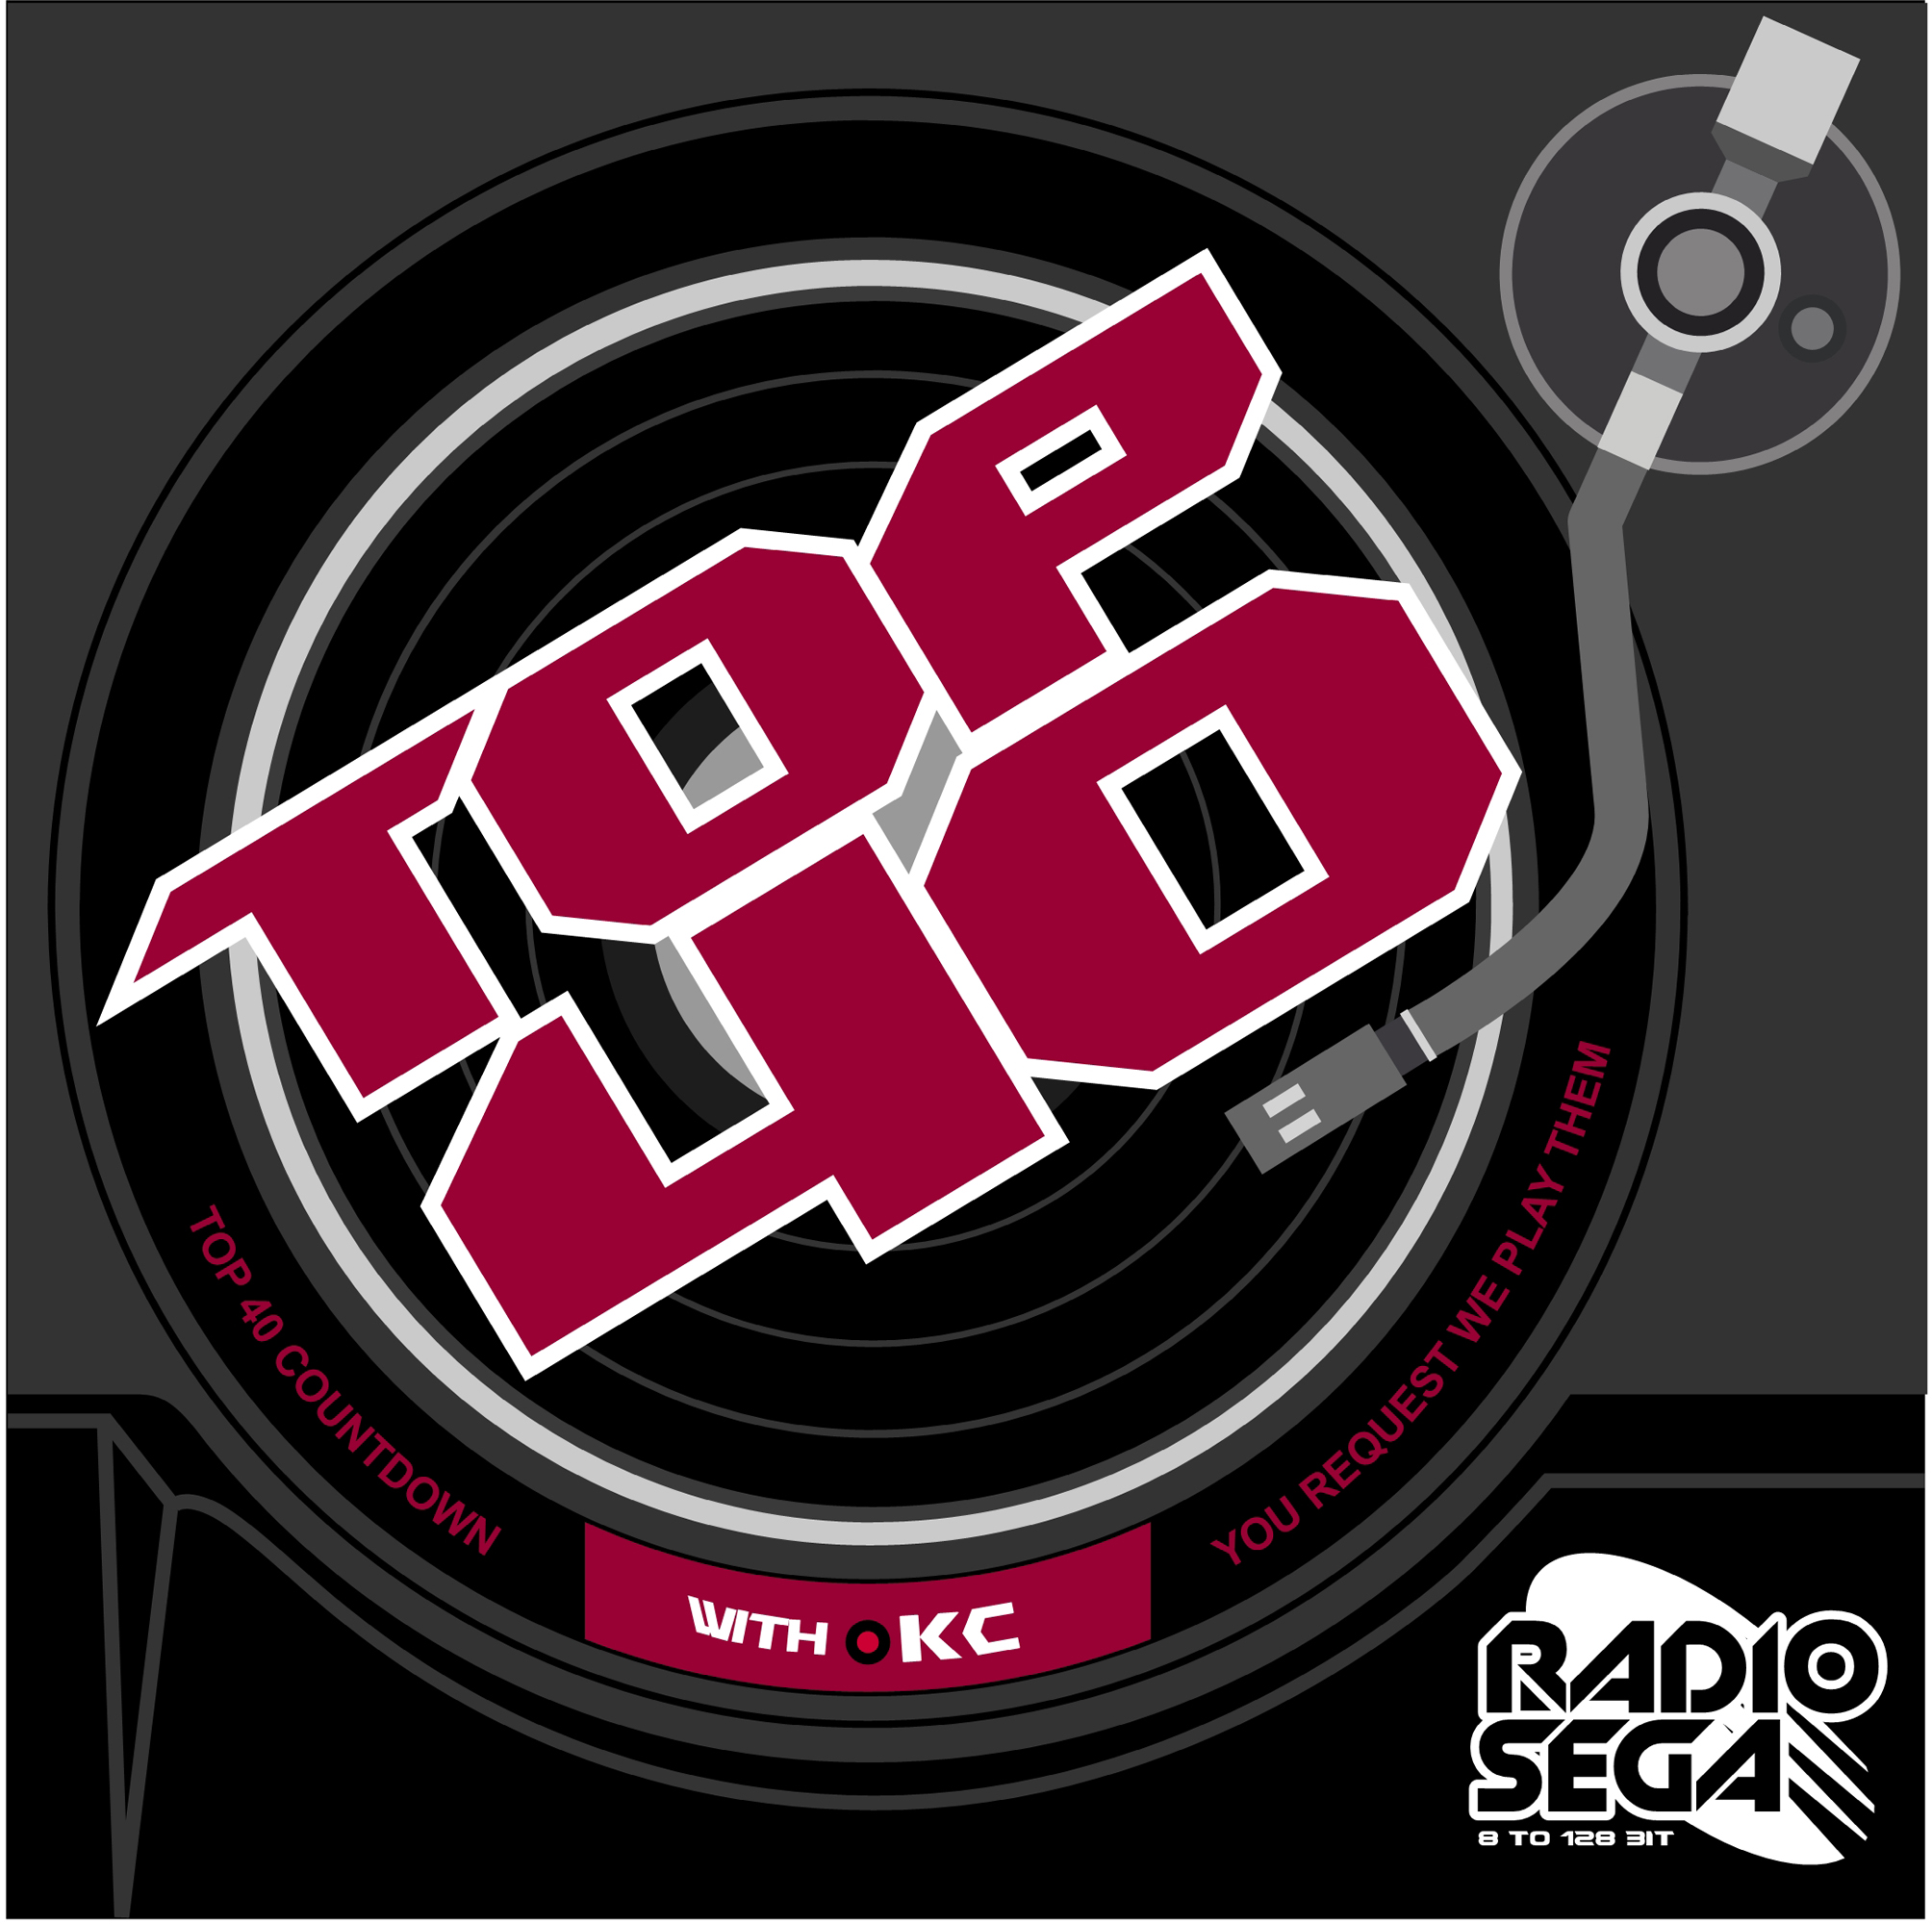 RadioSEGA's Top 40 Countdown